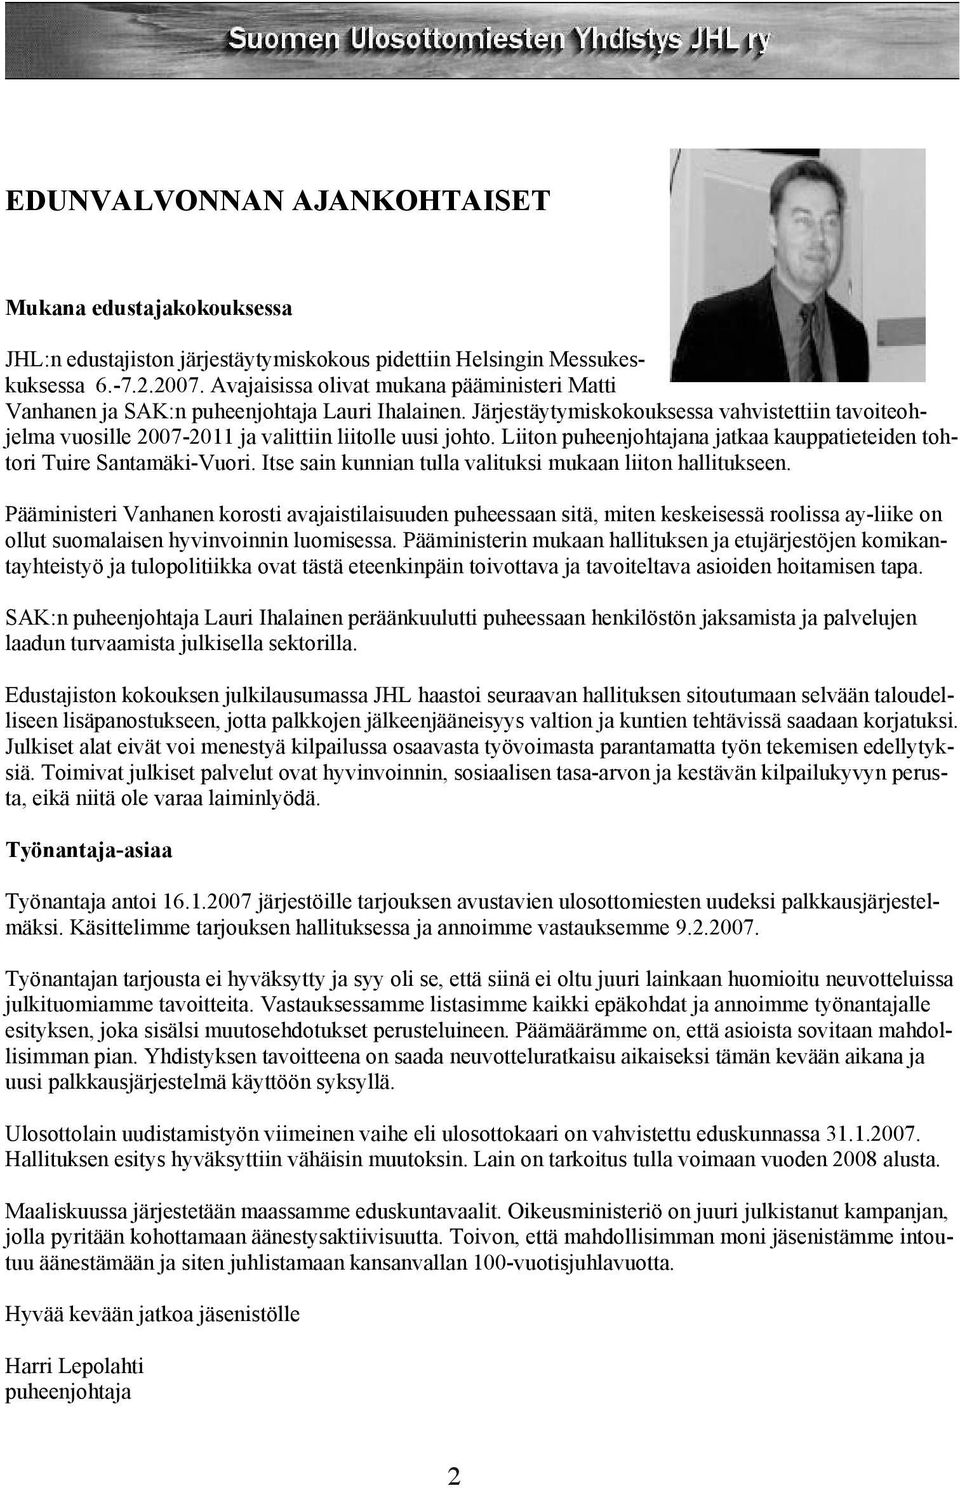 Järjestäytymiskokouksessa vahvistettiin tavoiteohjelma vuosille 2007-2011 ja valittiin liitolle uusi johto. Liiton puheenjohtajana jatkaa kauppatieteiden tohtori Tuire Santamäki-Vuori.